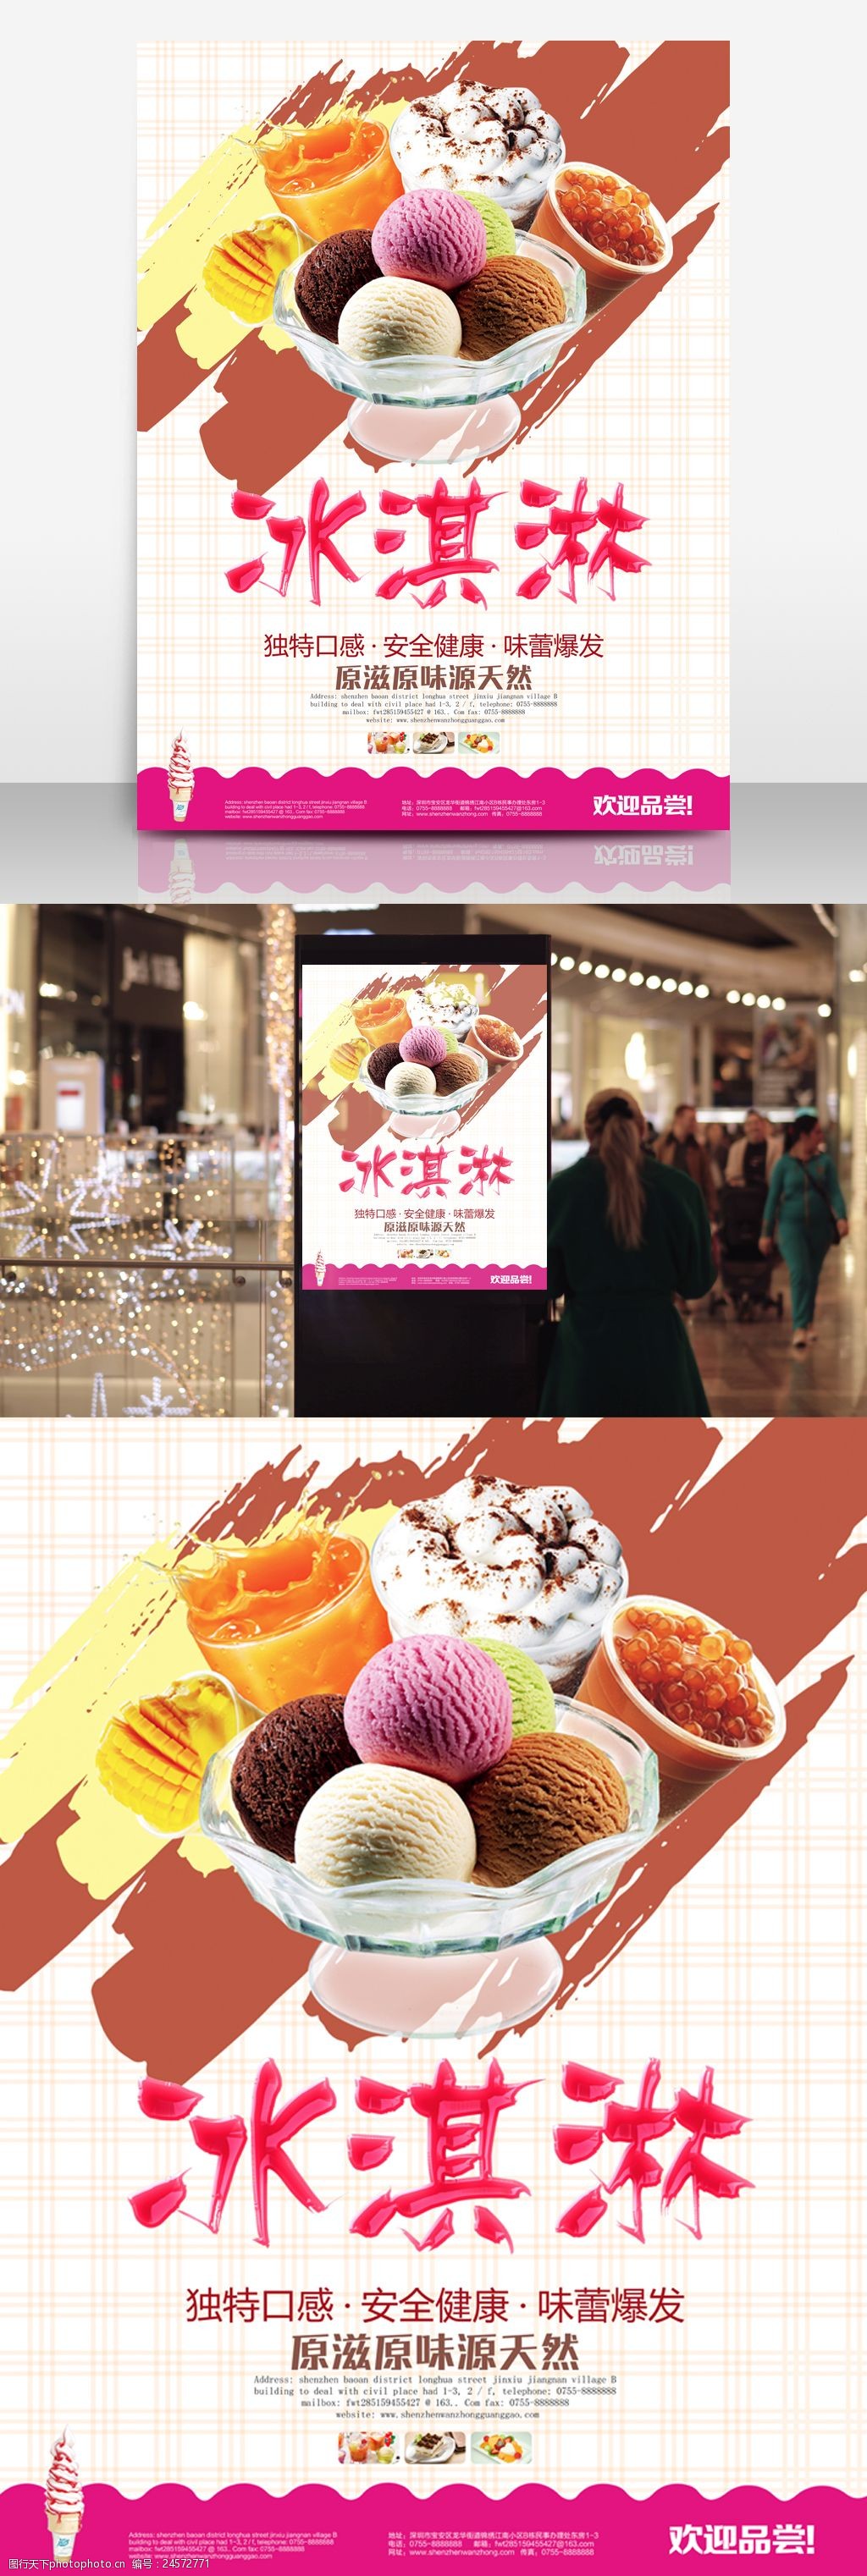 冰激凌球冷饮甜品店宣传海报简约冰淇淋海报设计